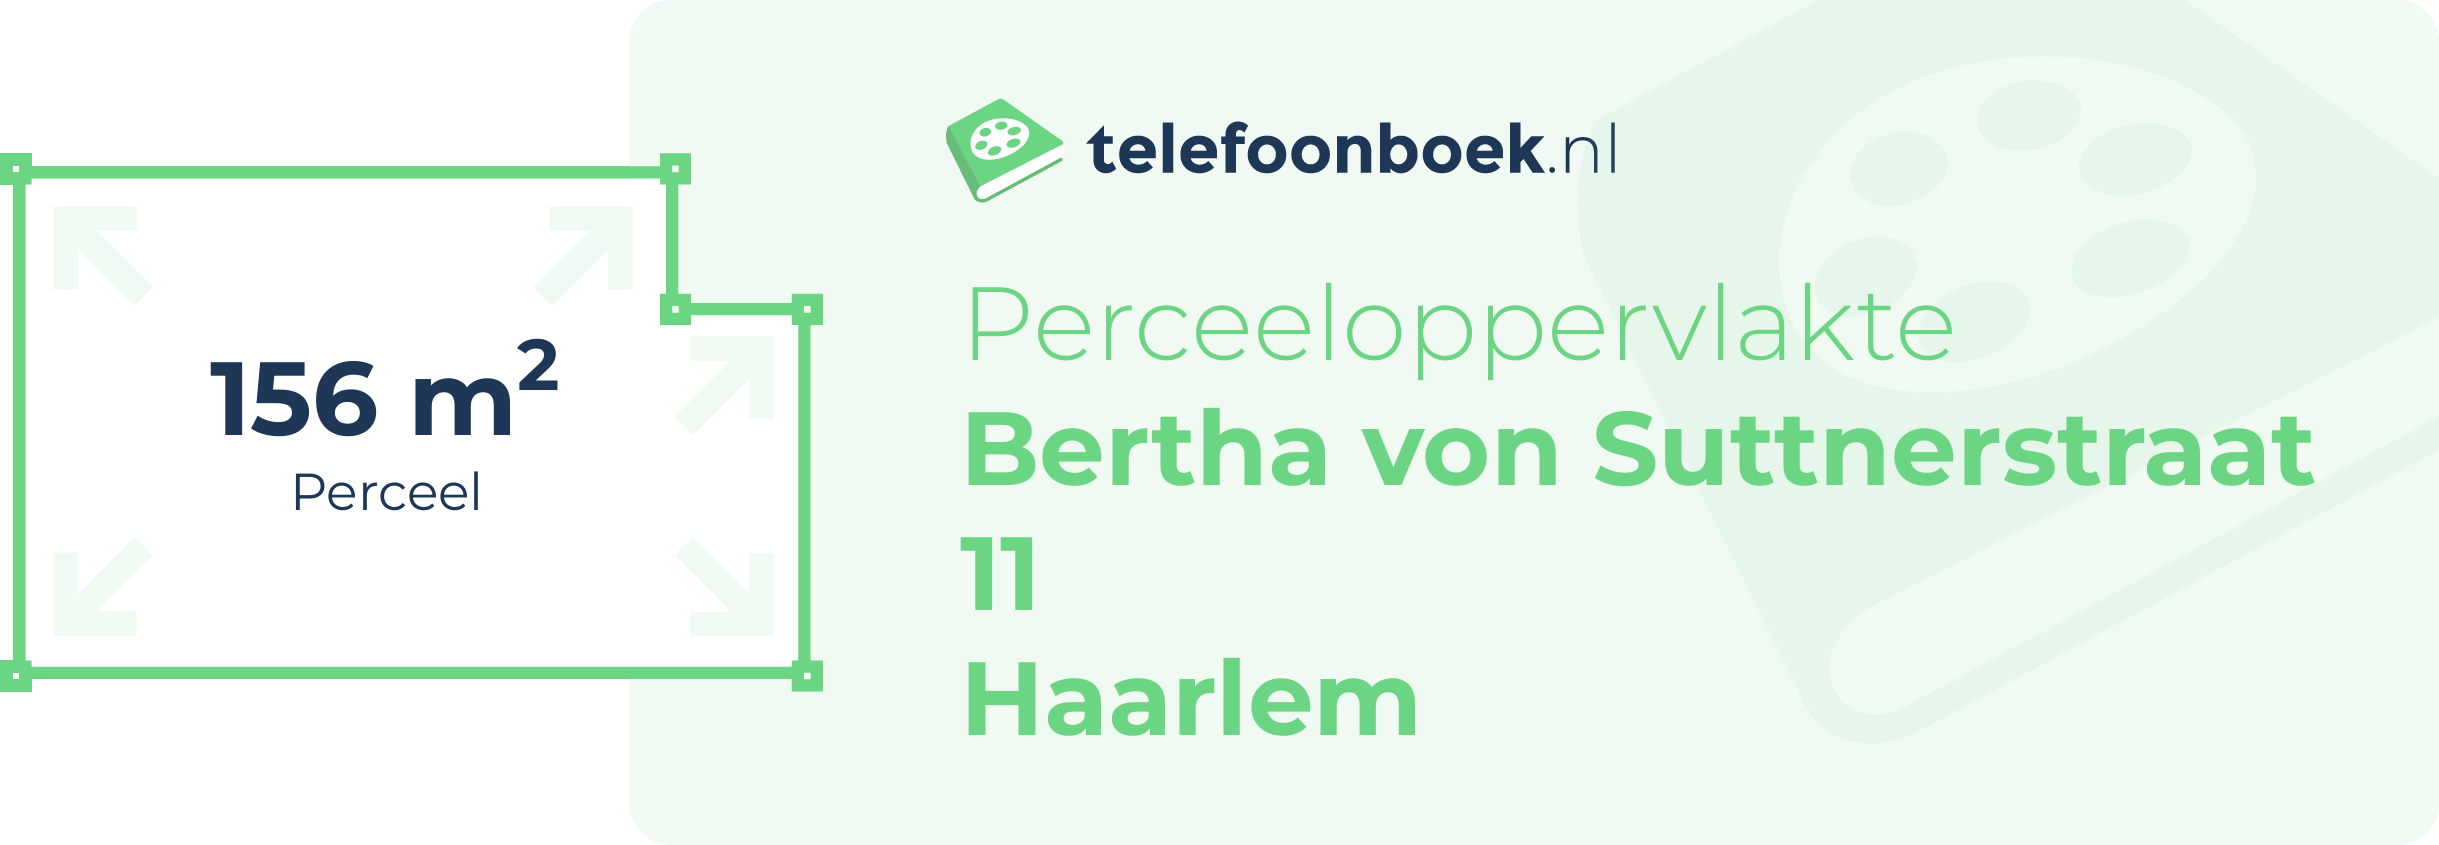 Perceeloppervlakte Bertha Von Suttnerstraat 11 Haarlem